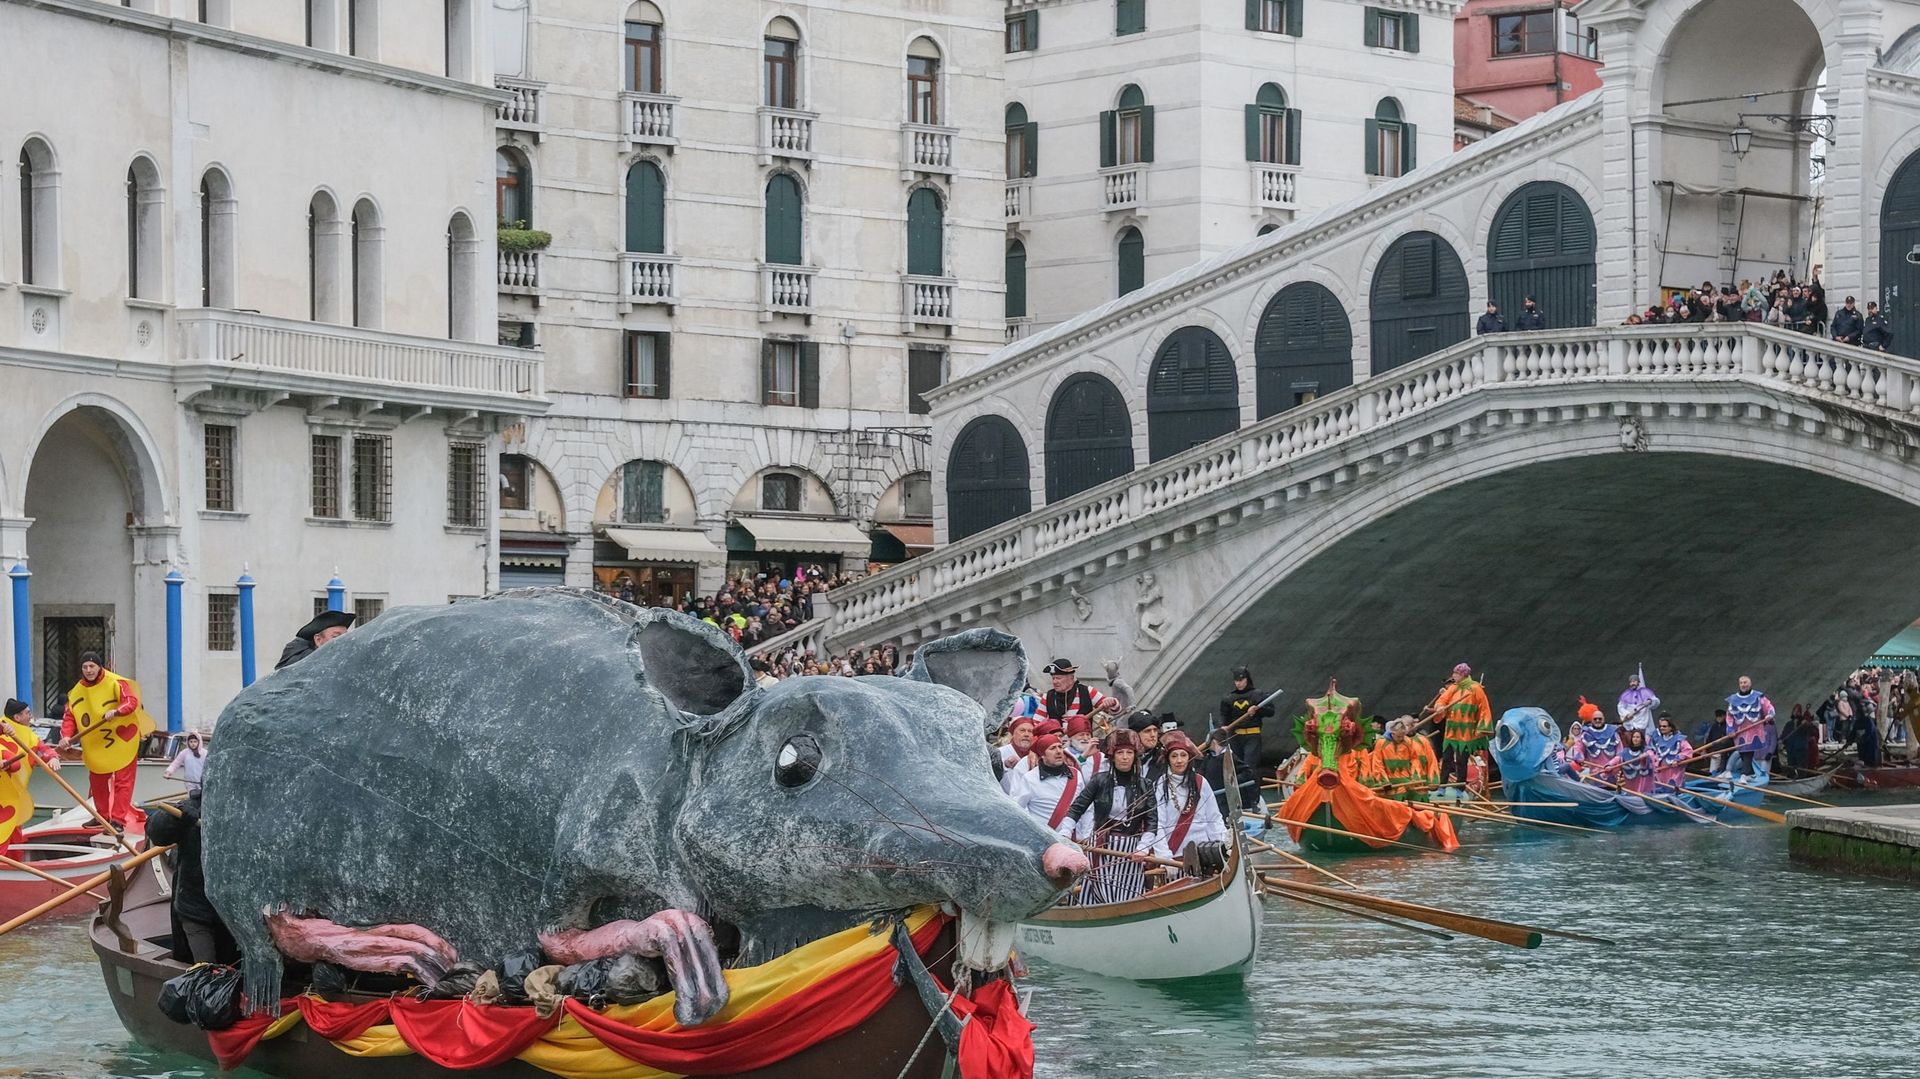 Le bateau transportant le grand rat "Pantegana", réalisé en papier mâché, transite pendant la régate du carnaval sur le Grand Canal le 5 février 2023 à Venise, Italie. Le Carnaval de Venise commencera le 4 février et se terminera le 21 février 2023 et ser